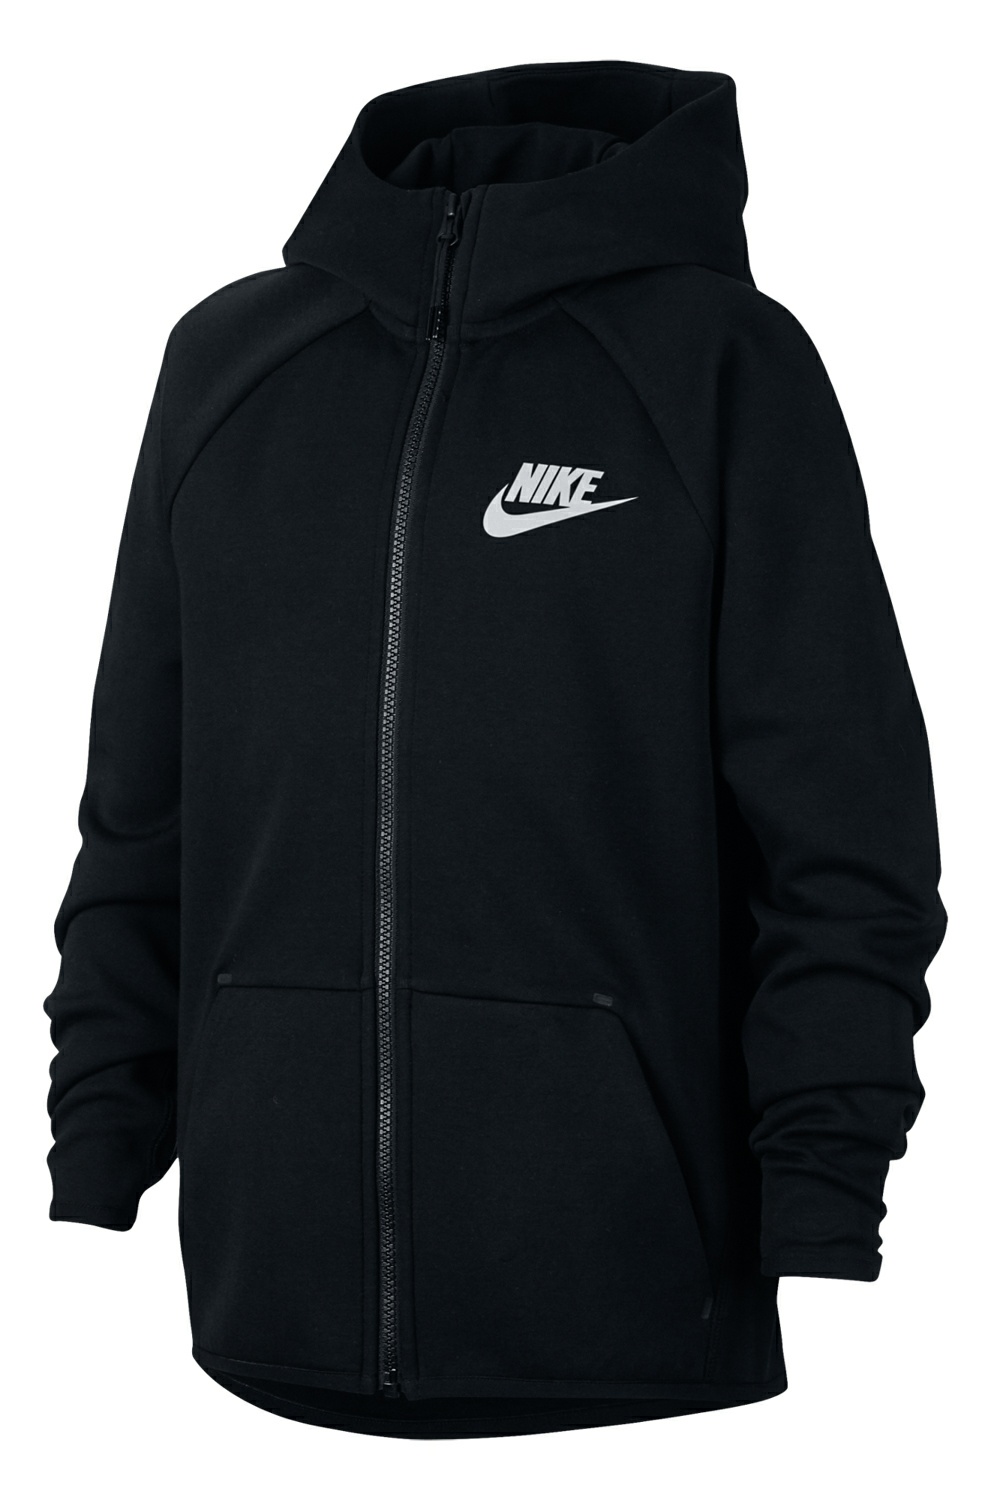 NIKE - Αγορίστικη ζακέτα Nike Sportswear Tech Fleece μαύρη Παιδικά/Boys/Ρούχα/Αθλητικά